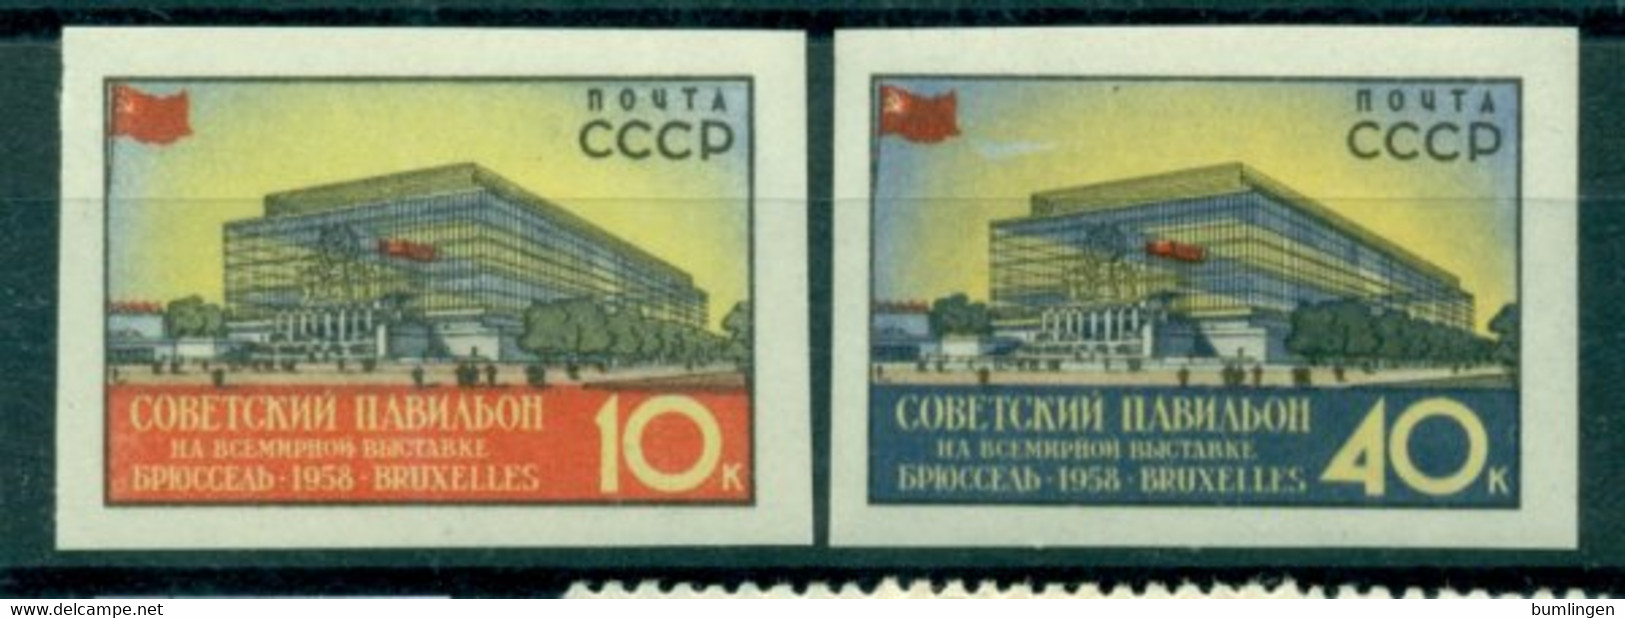 SOVIET UNION 1958 Mi 2068-69B** World Expo, Brussels [L2517] - 1958 – Bruxelles (Belgique)